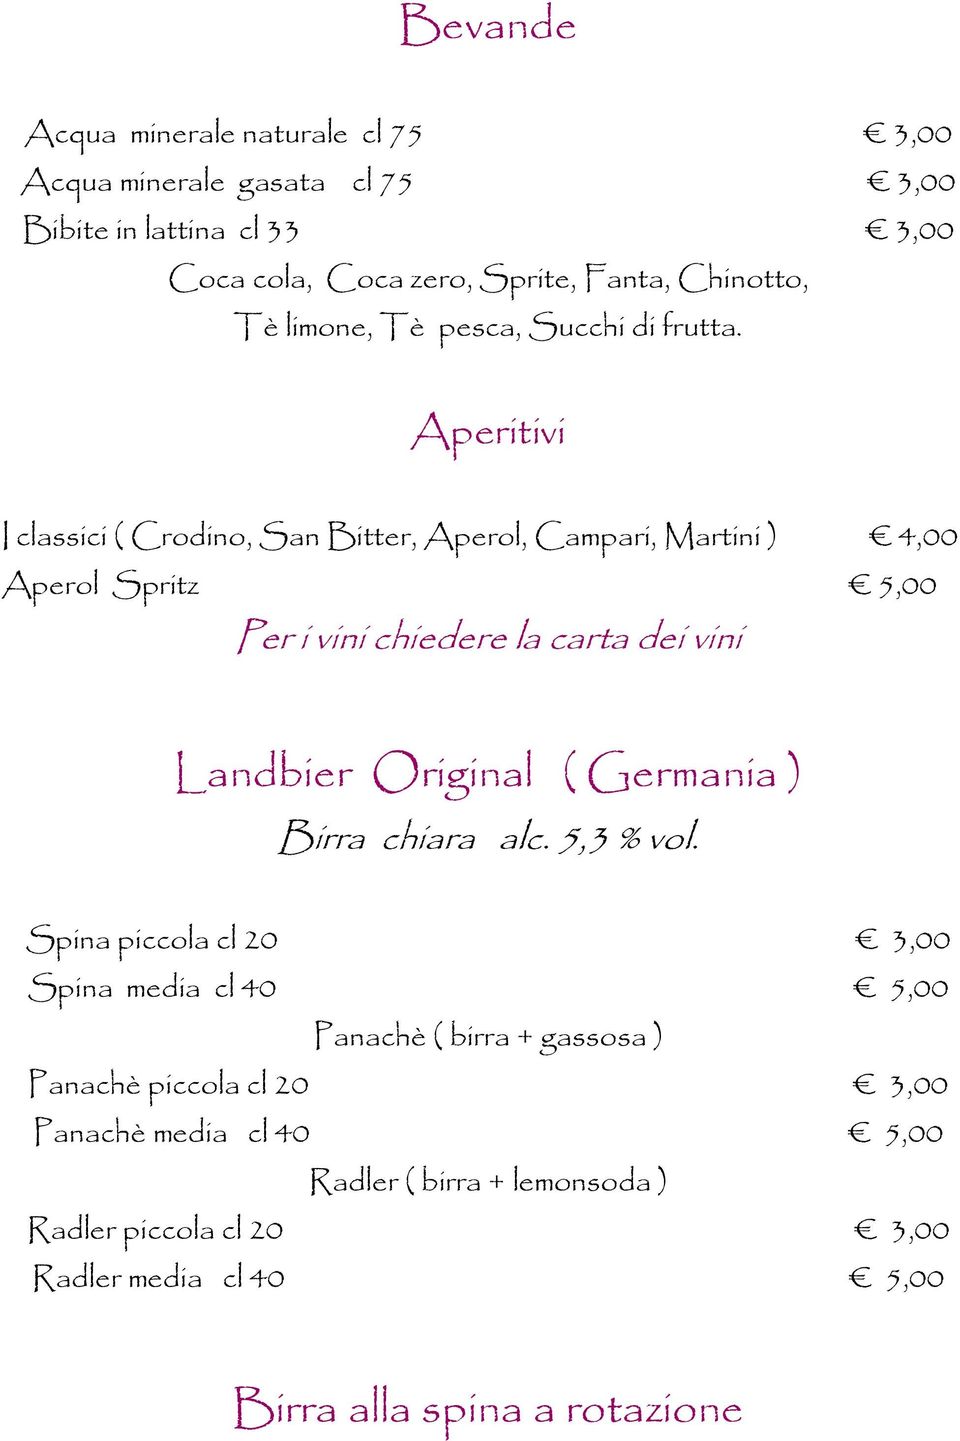 Aperitivi I classici ( Crodino, San Bitter, Aperol, Campari, Martini ) 4,00 Aperol Spritz 5,00 Per i vini chiedere la carta dei vini Landbier Original (